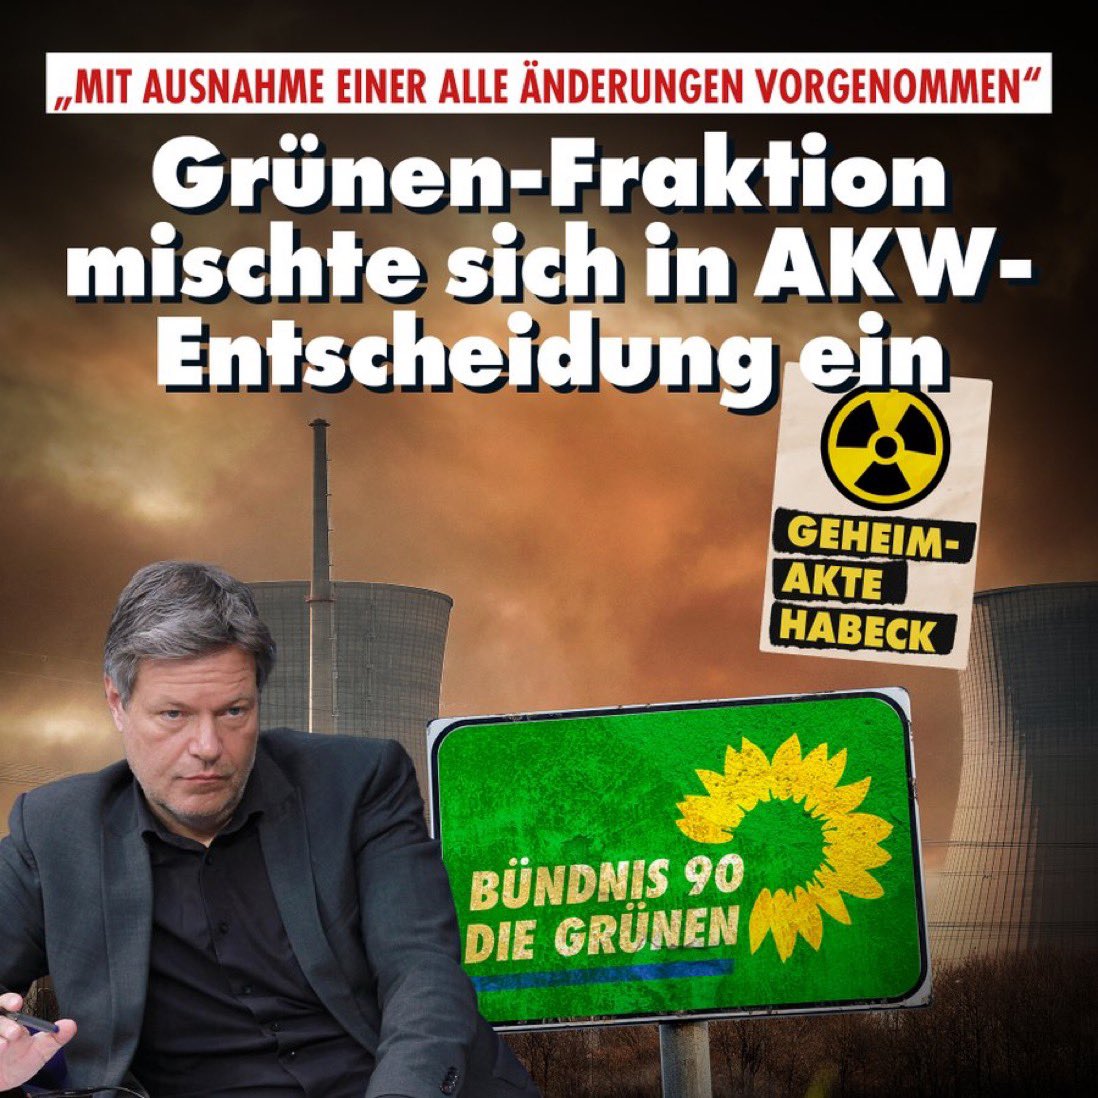 Nun liegt auch @niusde_ die #Atomaus-Akte vor. Aus dieser deuten Mails & Dokumente darauf hin, dass die Grünen-Bundestagsfraktion sich wohl aktiv in das AKW-Prozedere eingemischt hat.. #Habeck‘s Ministerium ist mehr politisch gesteuert als fachlich. nius.de/news/mit-ausna…